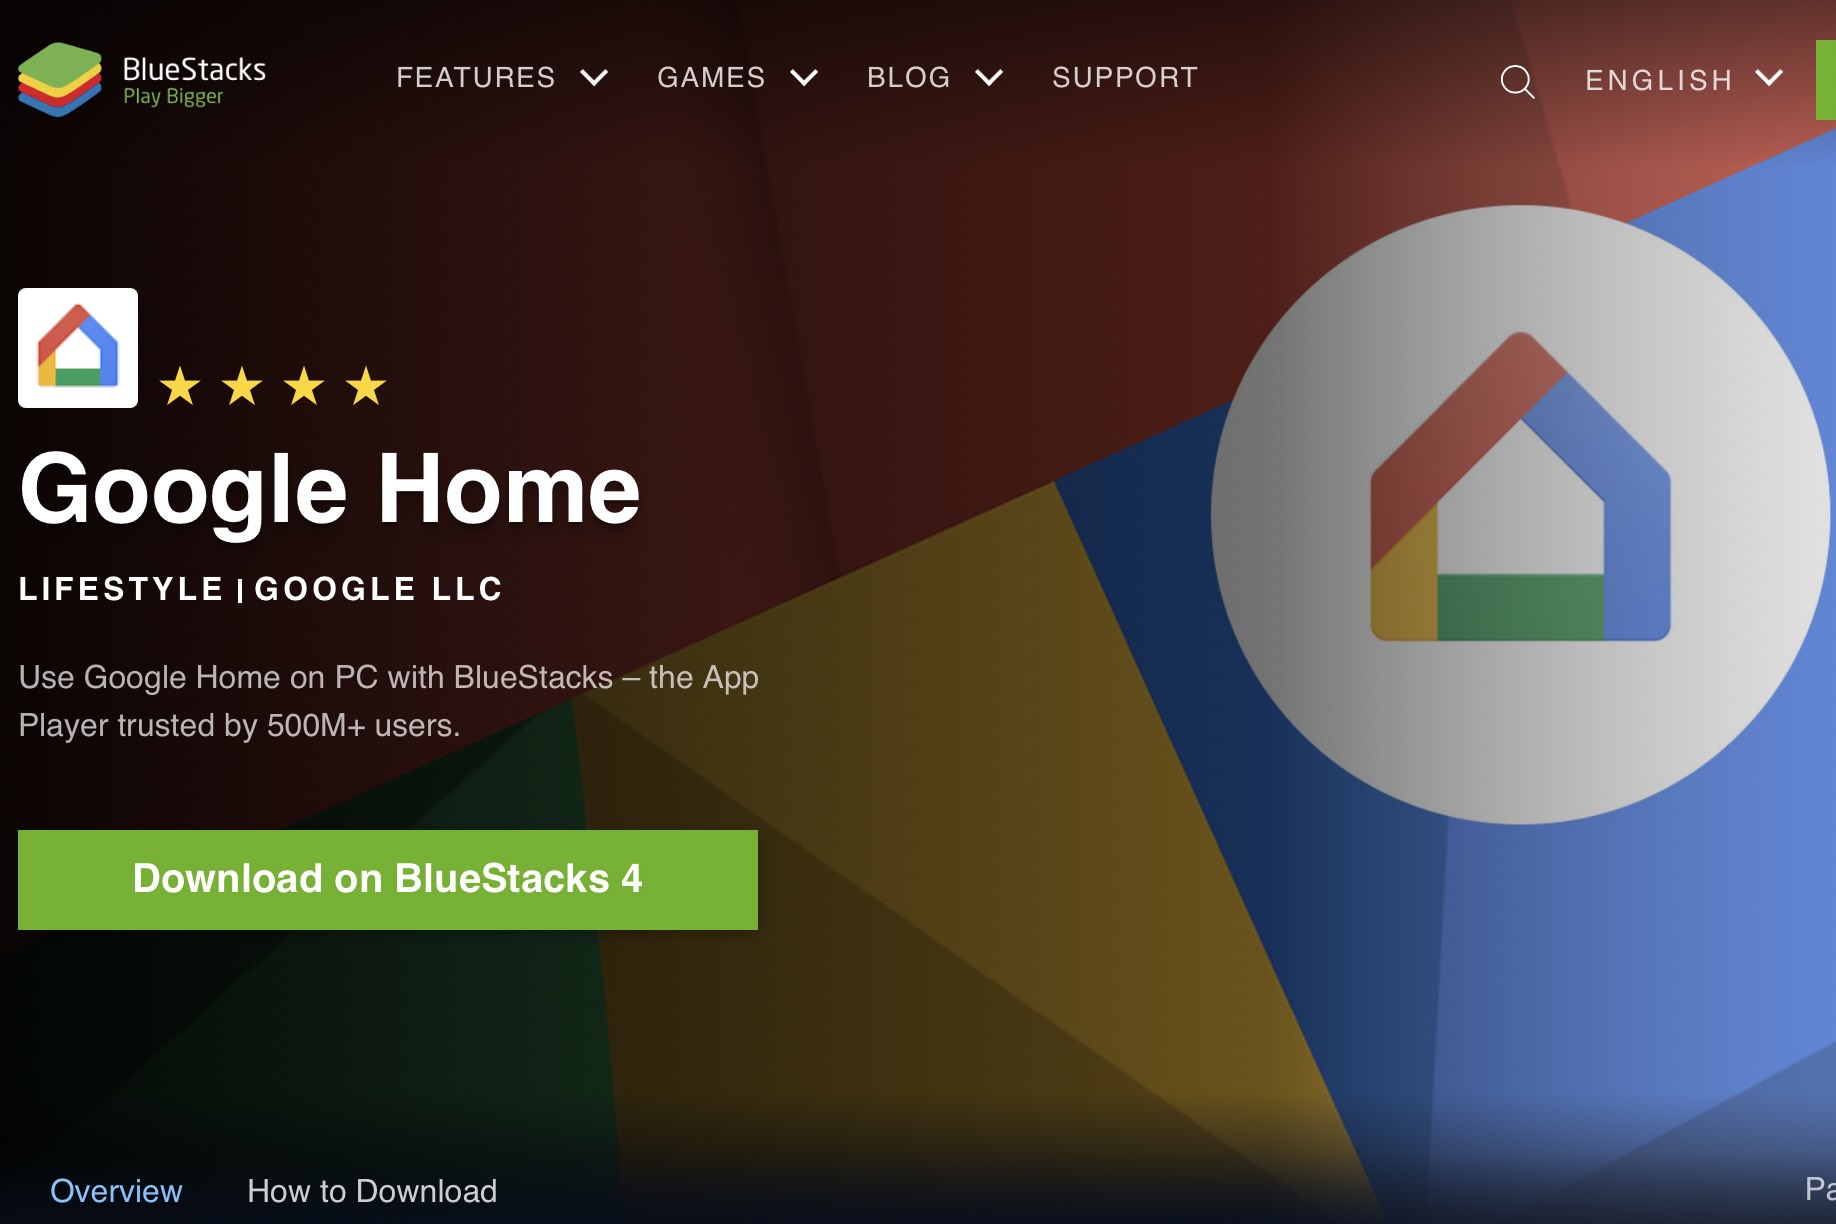 The Google Home app for Bluestacks.